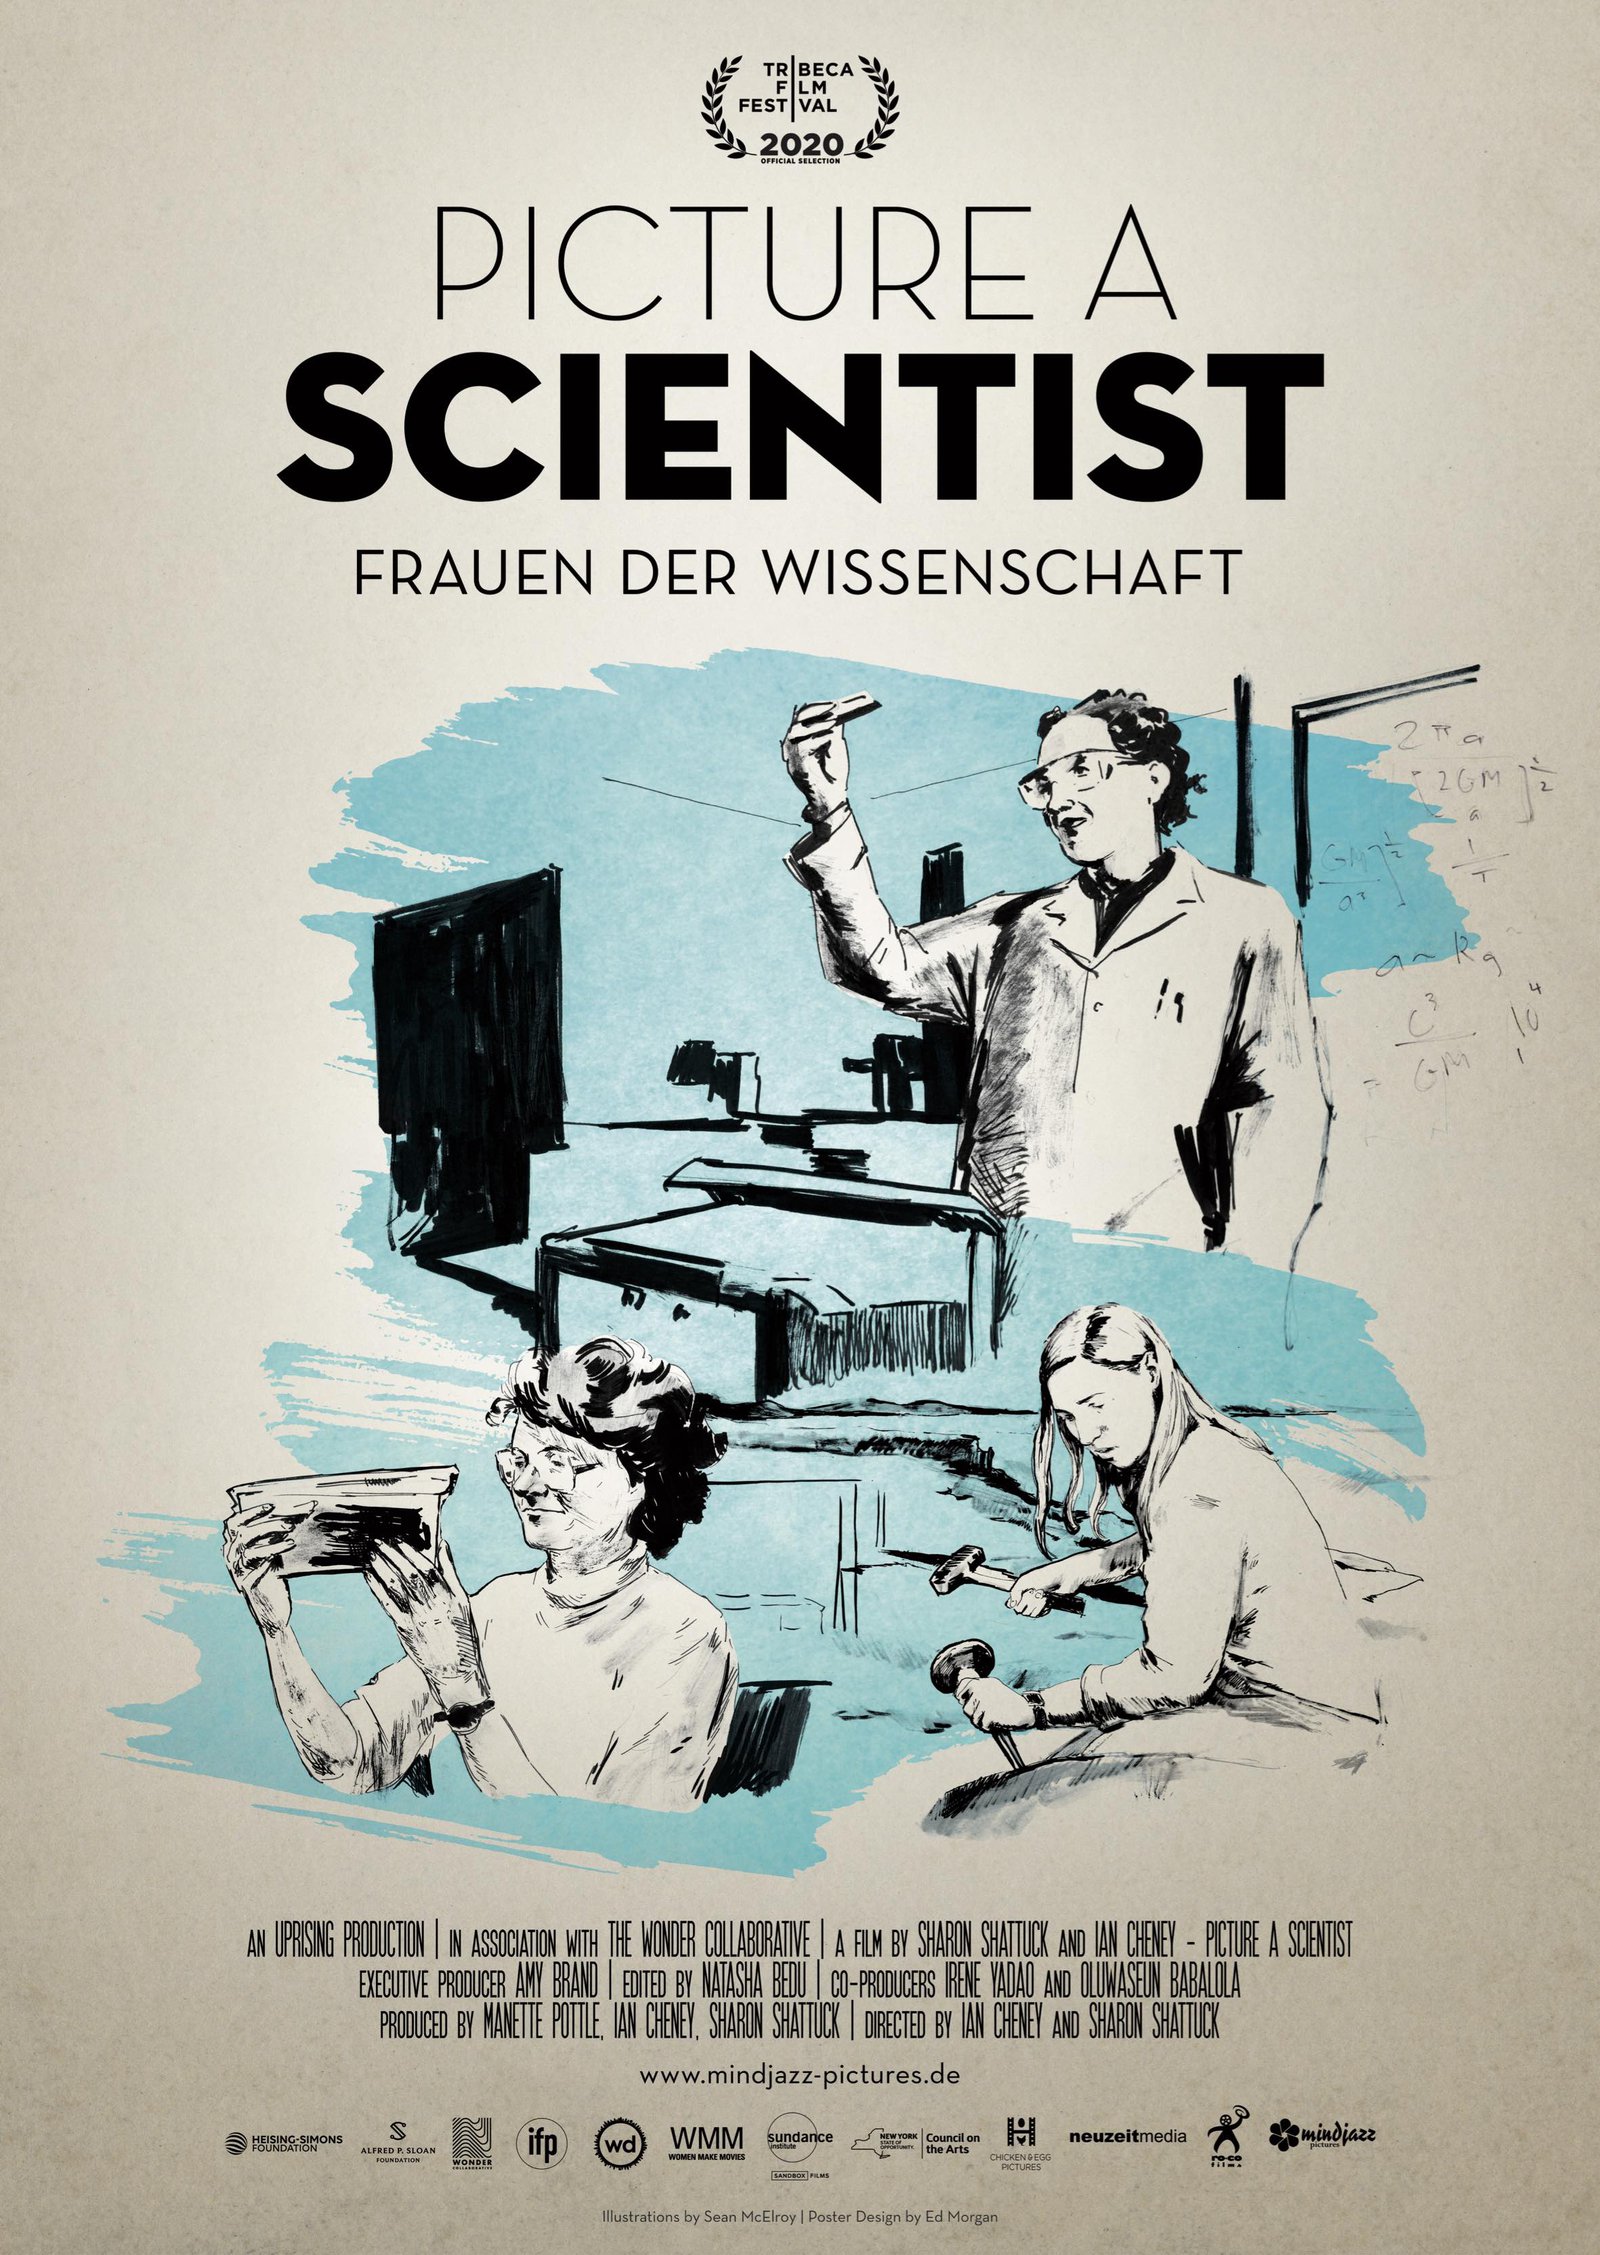 Werbeflyer Filmvorführung "Picture a Scientist" mit Podiumsdiskussion